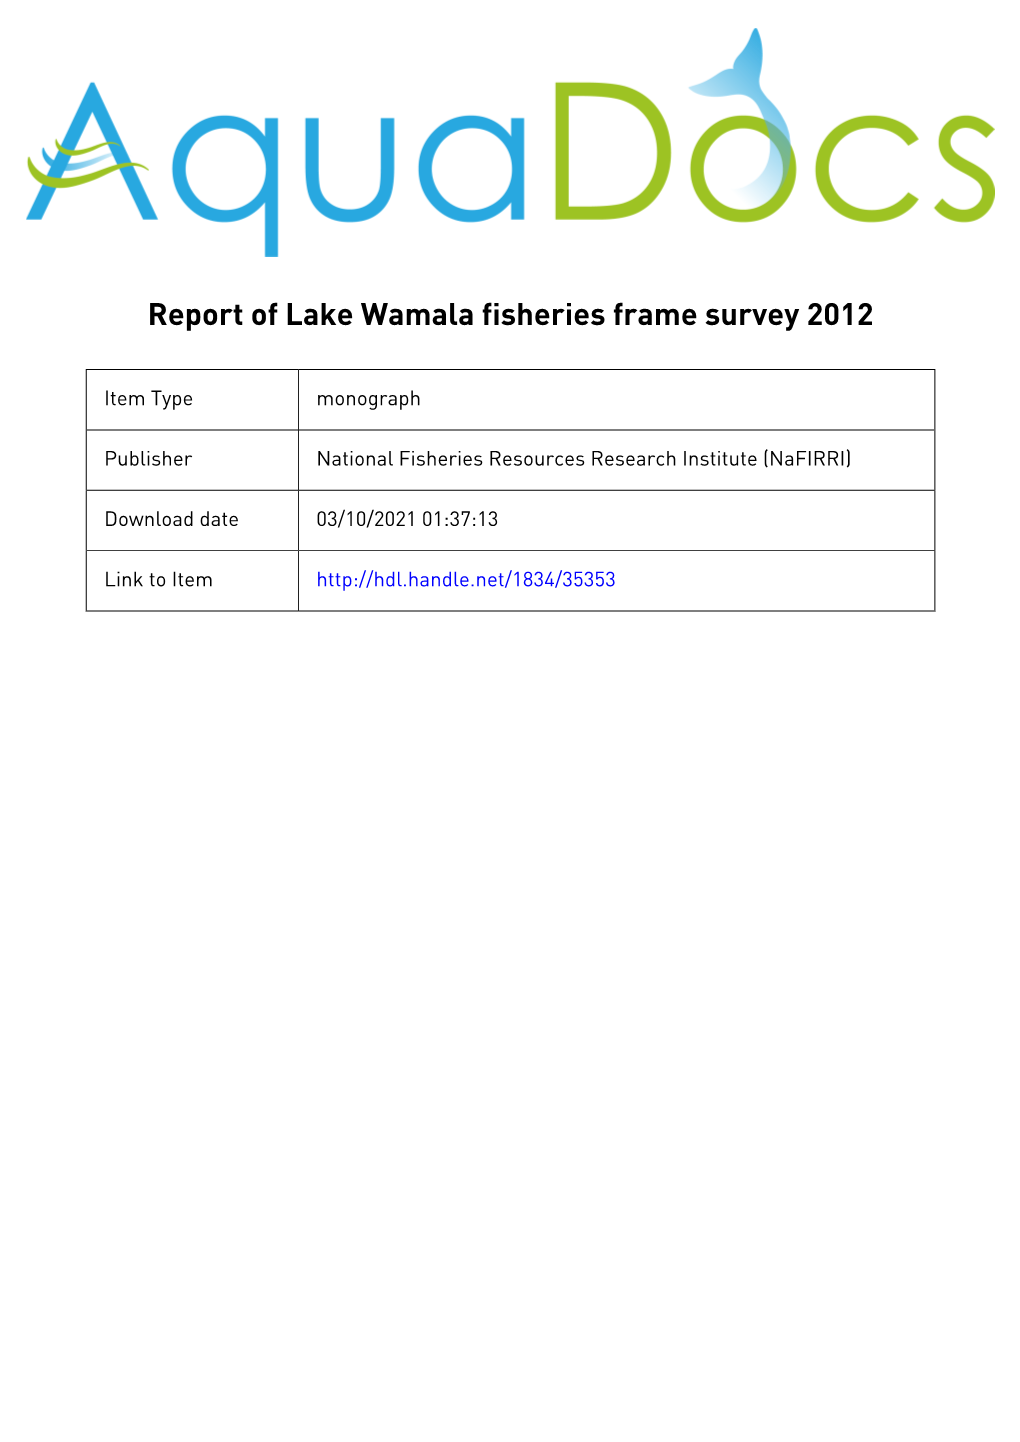 Report of Lake Wamala Fisheries Frame Survey 2012